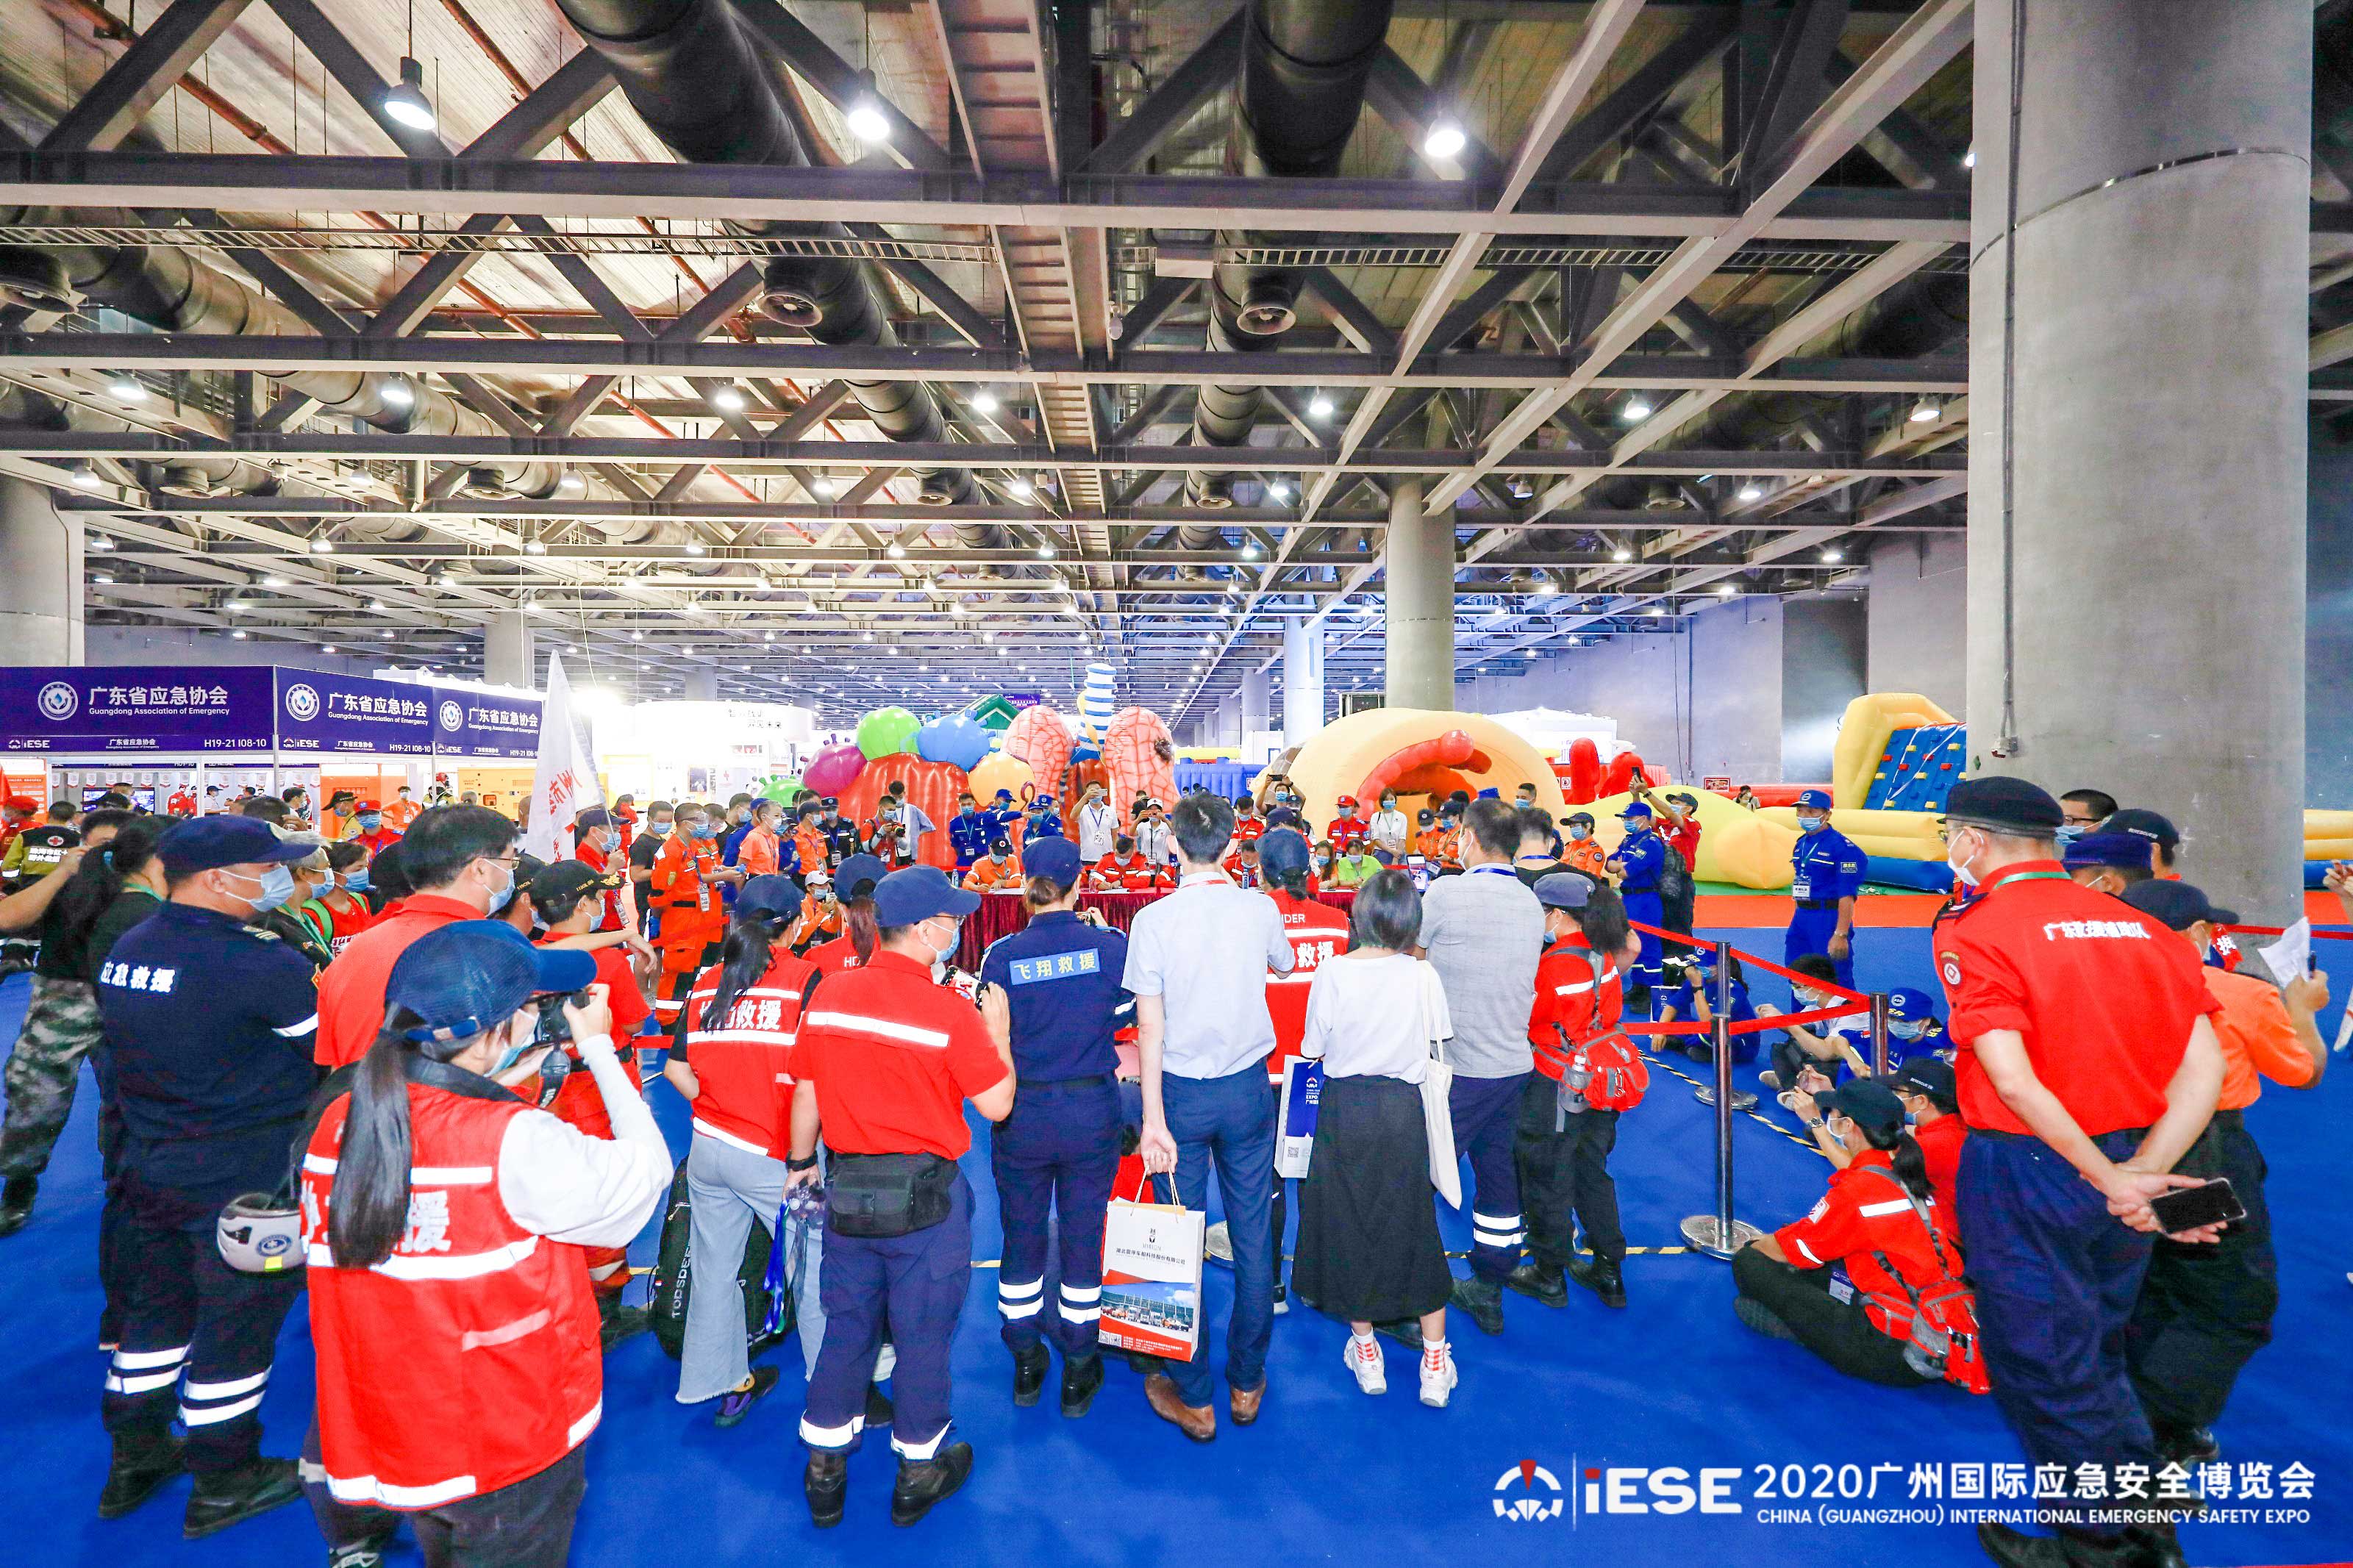 2020中国（广州）国际应急安全博览会隆重开幕